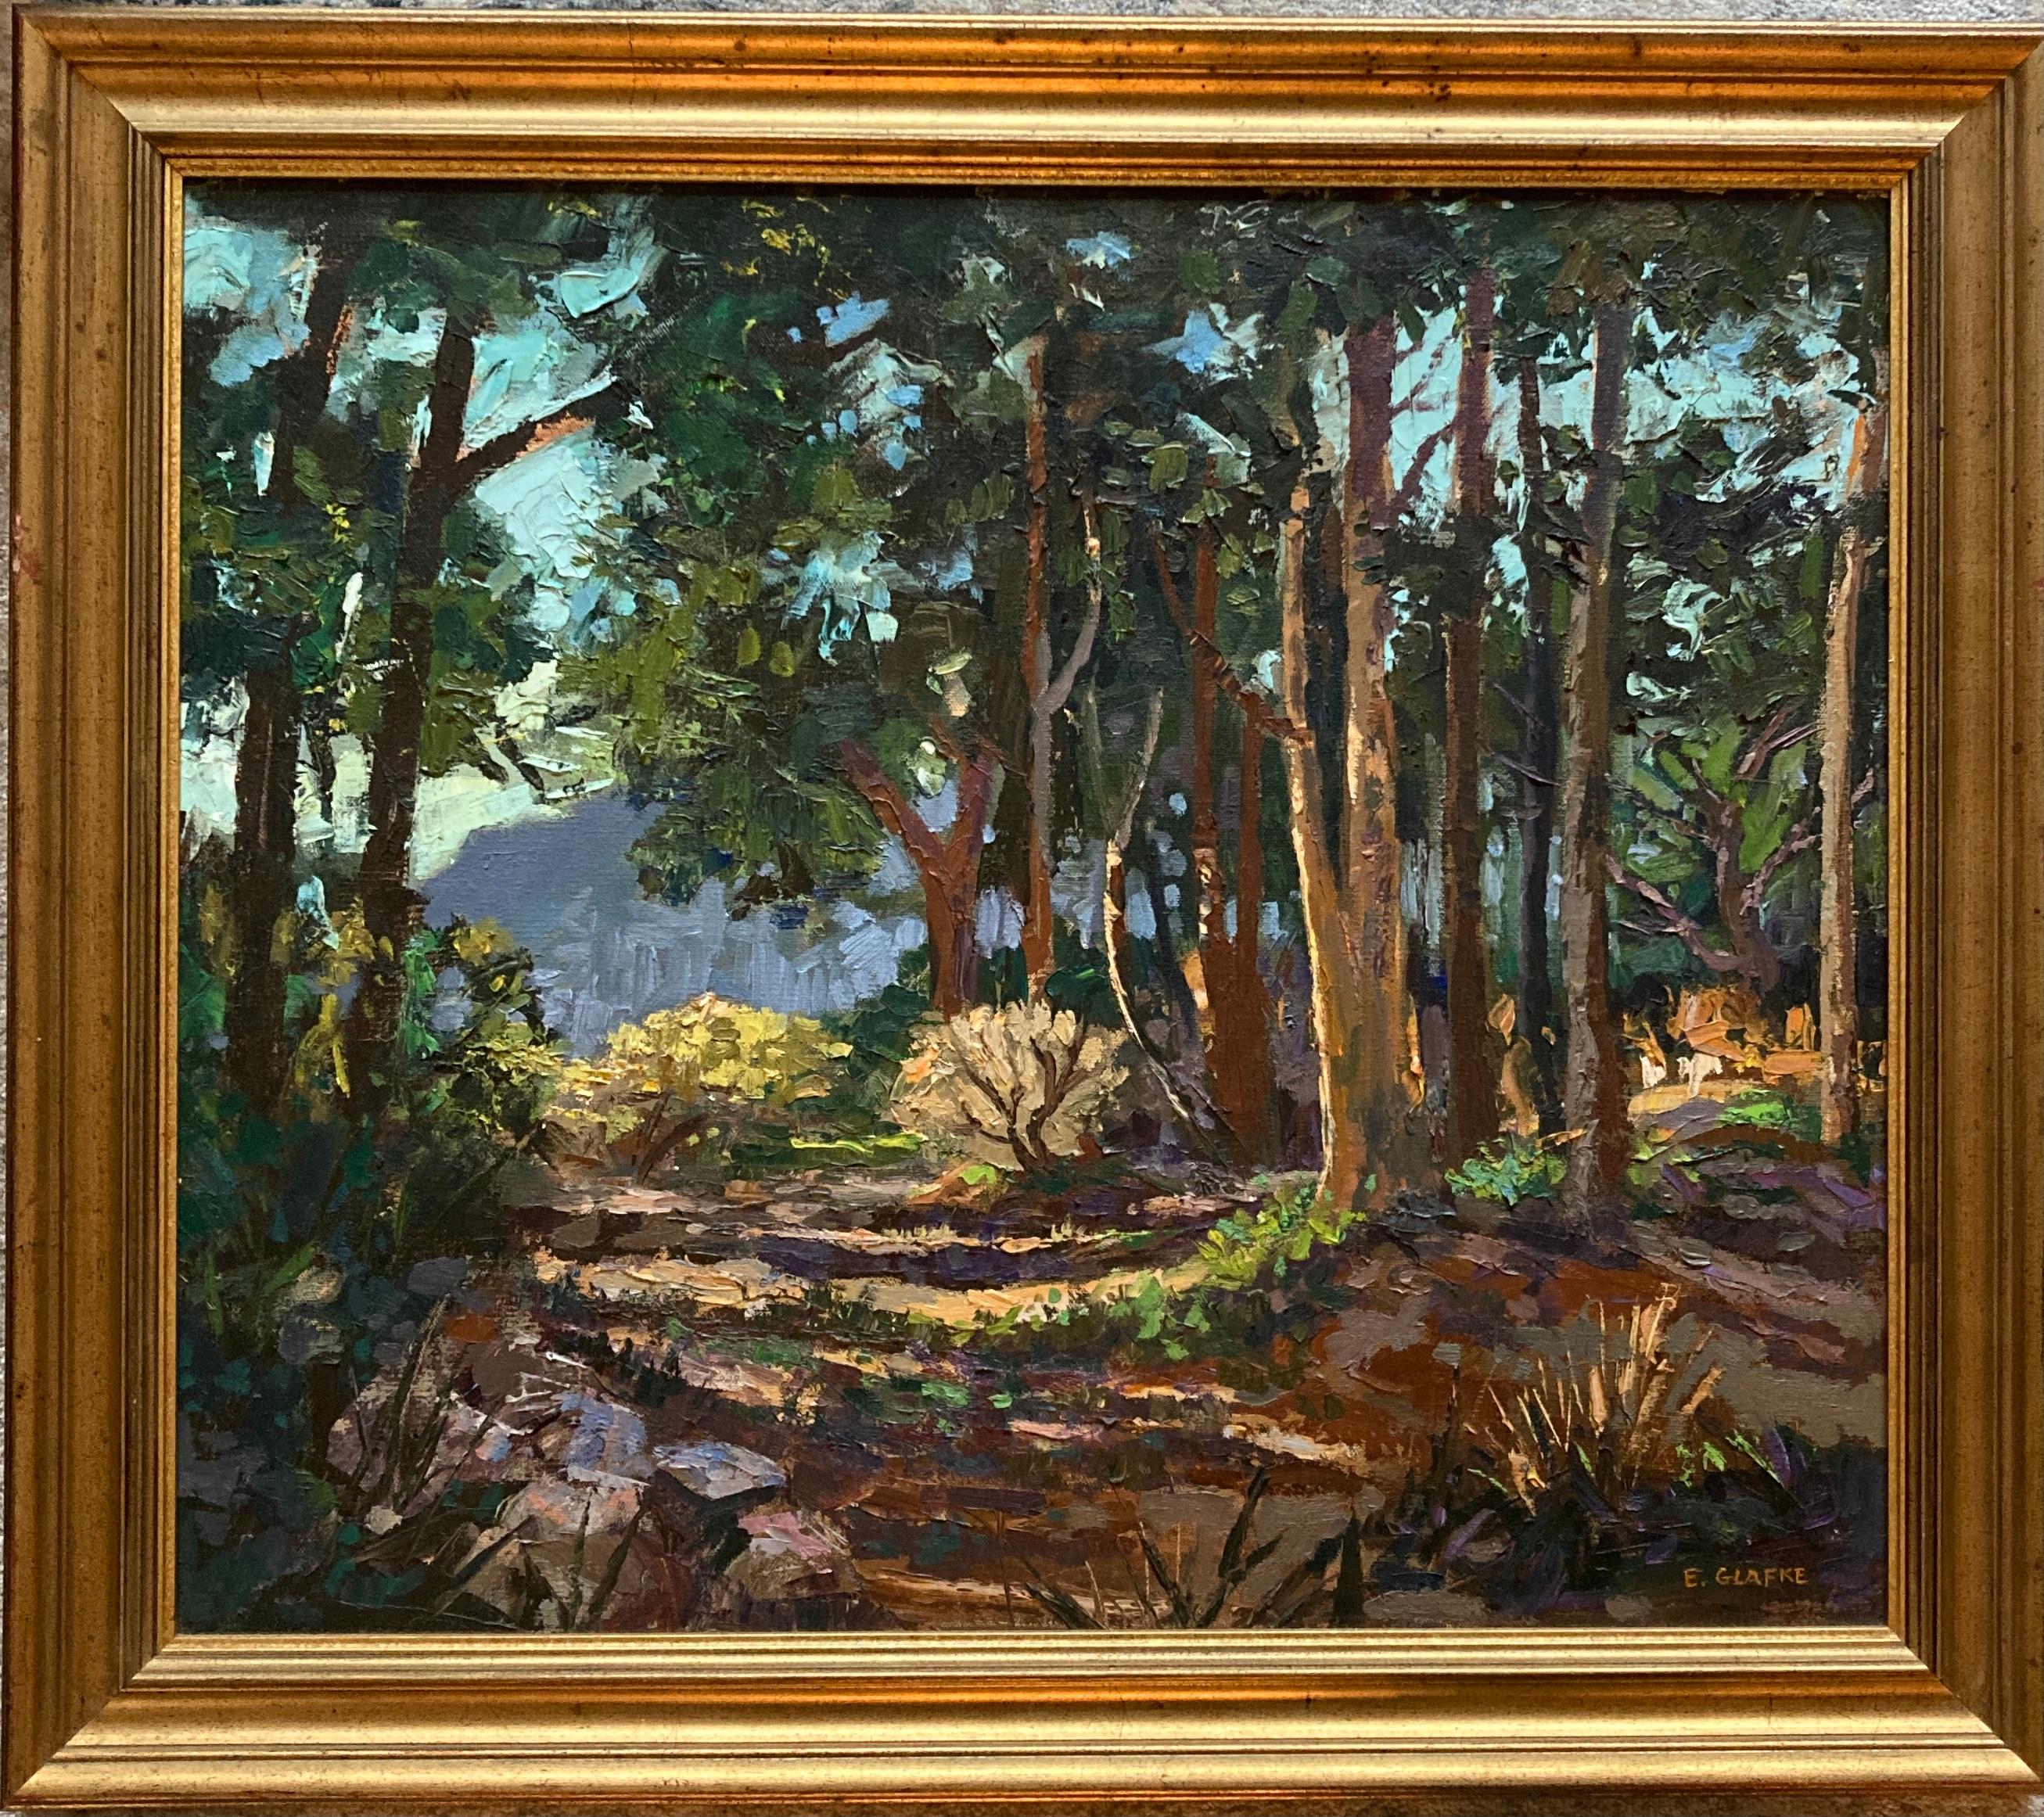 Edward Glafke 'Tiburon Forest' Impressionist Landscape Painting For Sale 1